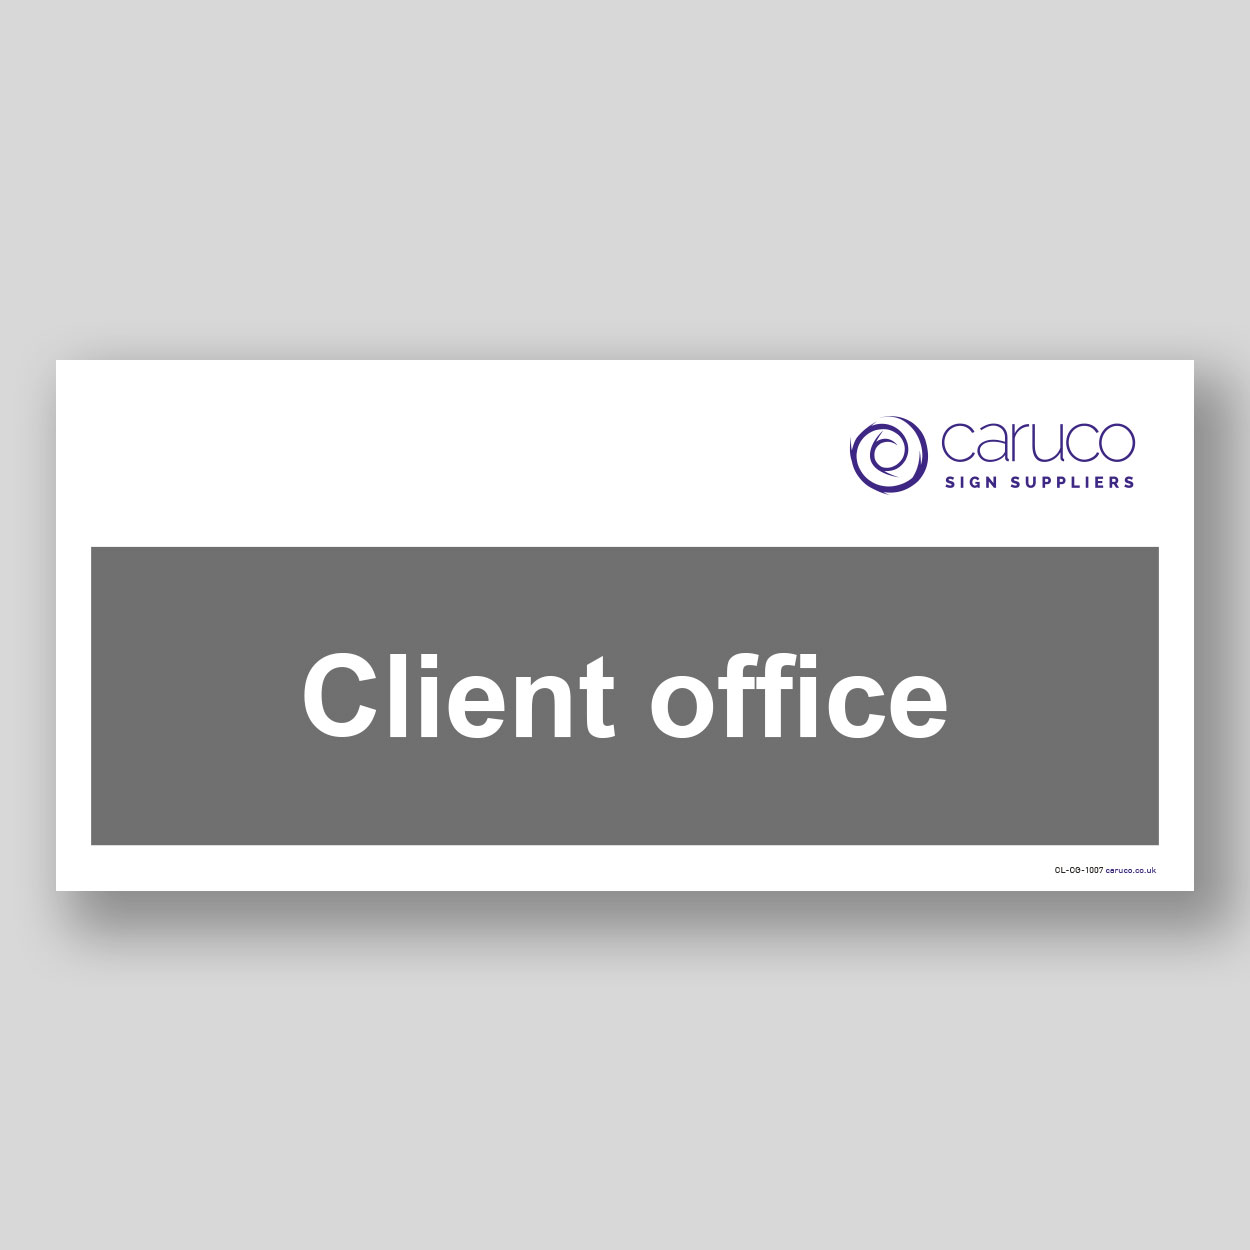 CL-CG-1007 Client office